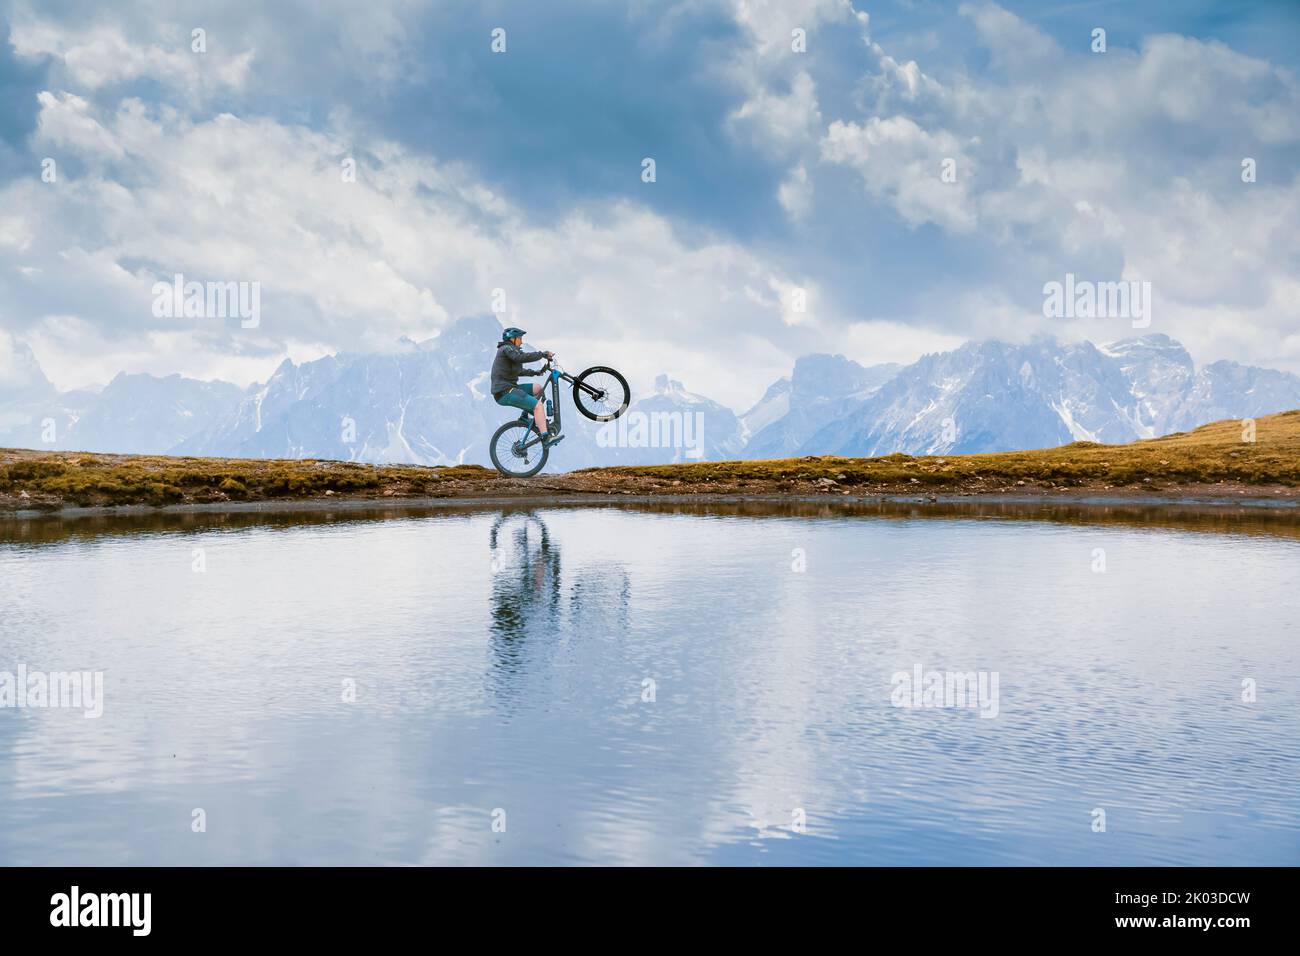 Italie, Tyrol du Sud, Bolzano / Bozen, San Candido / Innichen. Cavalier avec e-bike, réflexion dans un petit lac alpin en une journée nuageux Banque D'Images